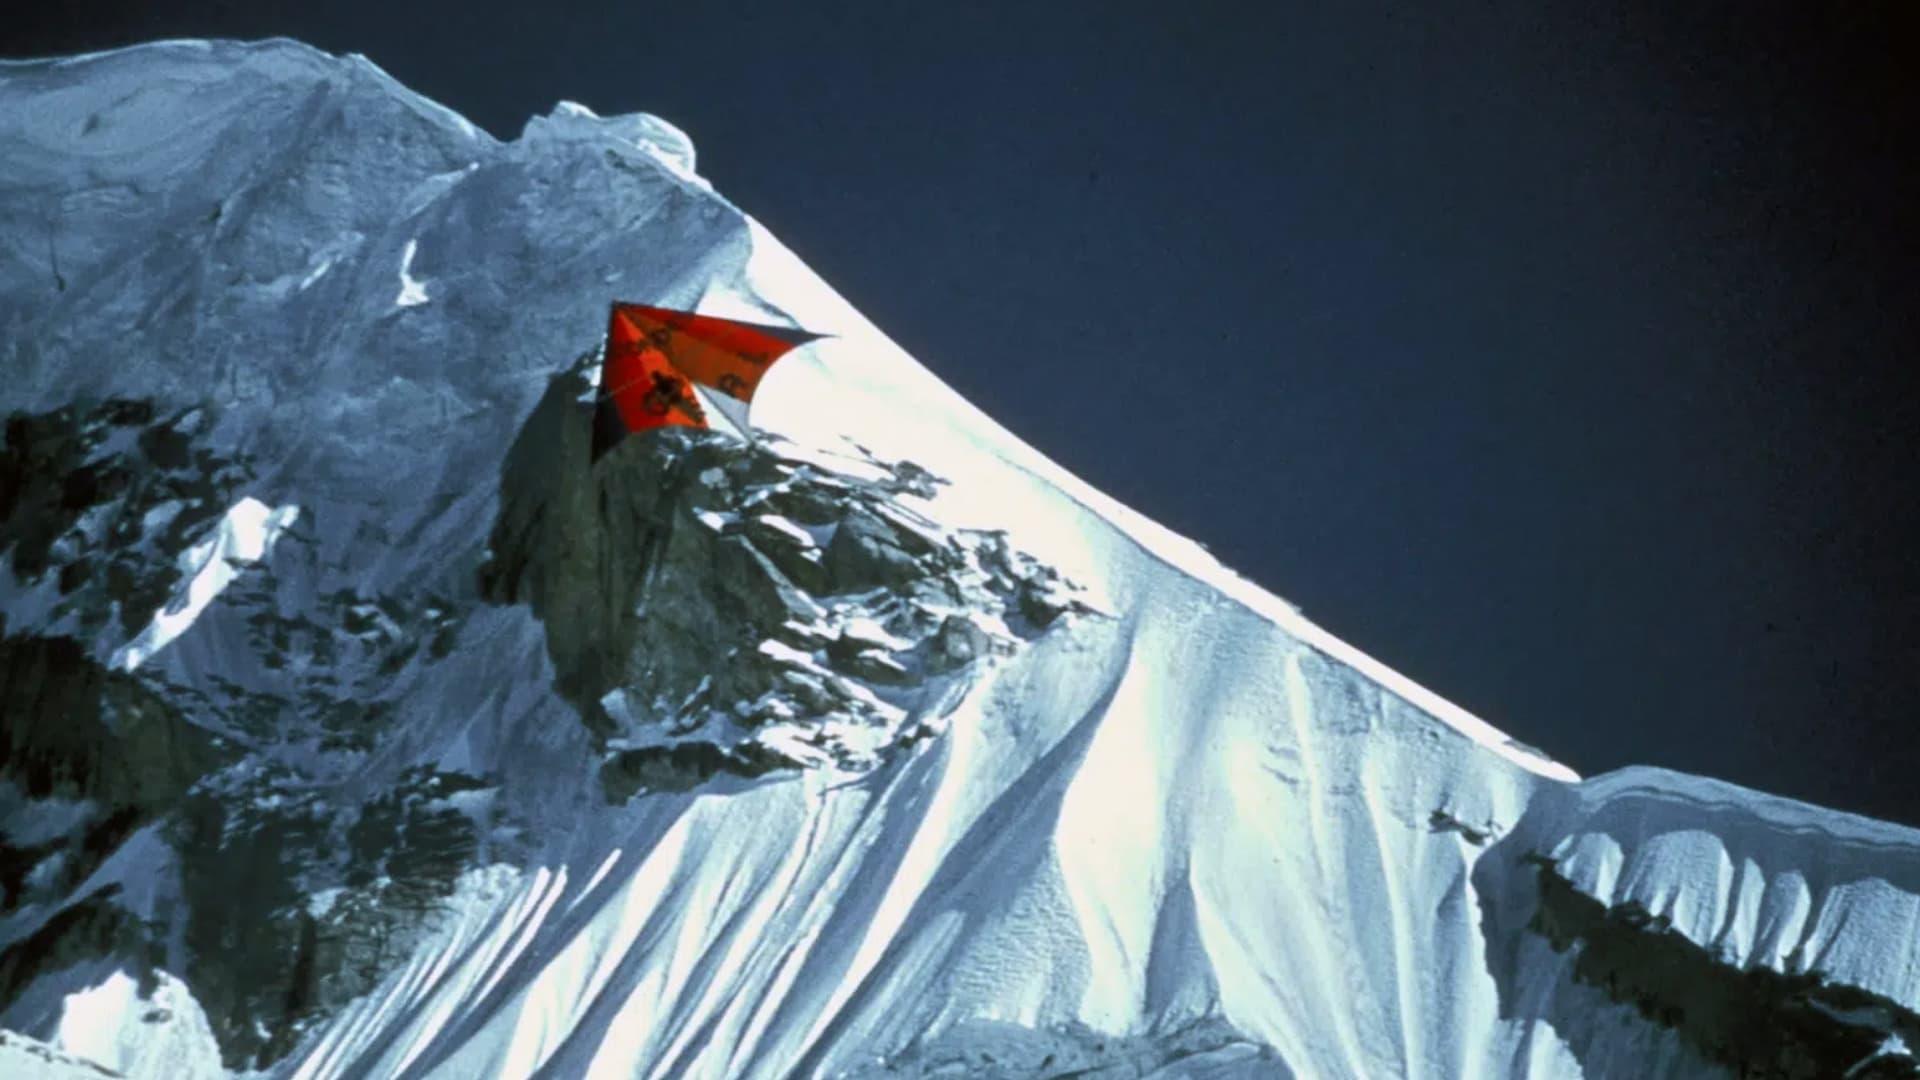 K2 La Montagne Inachevée backdrop